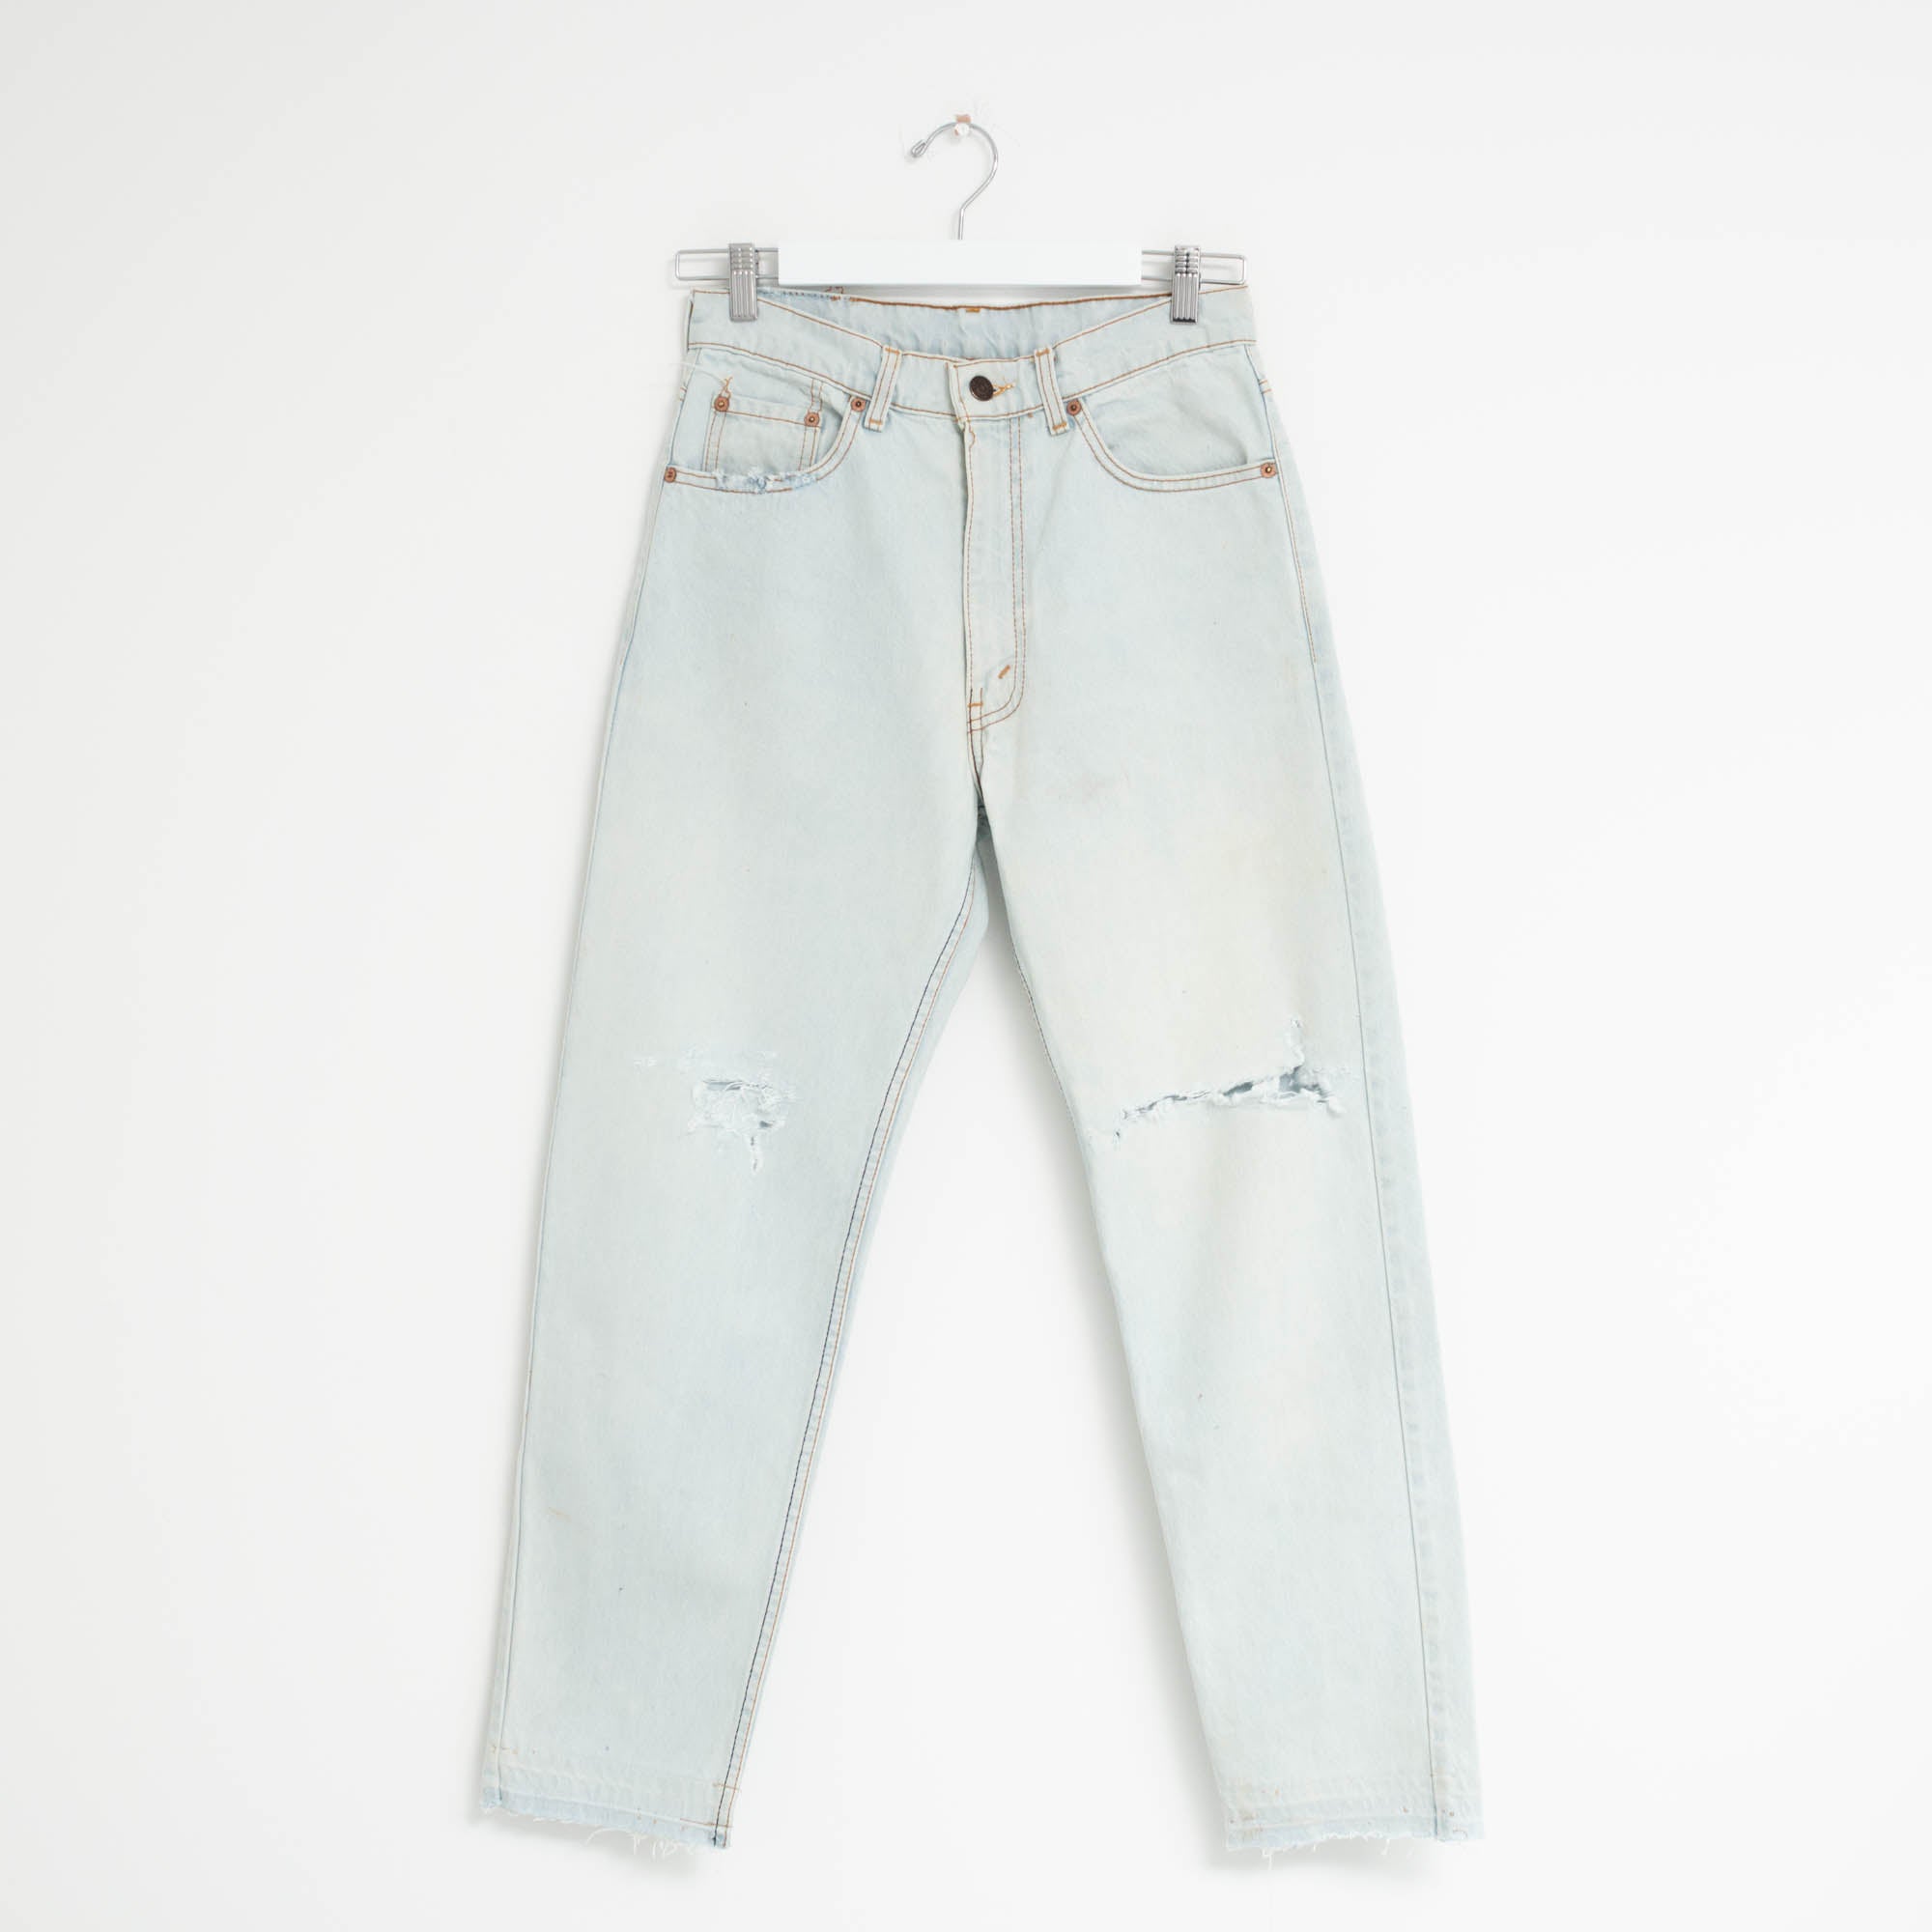 "DISTRESSED" Jeans W29 L28